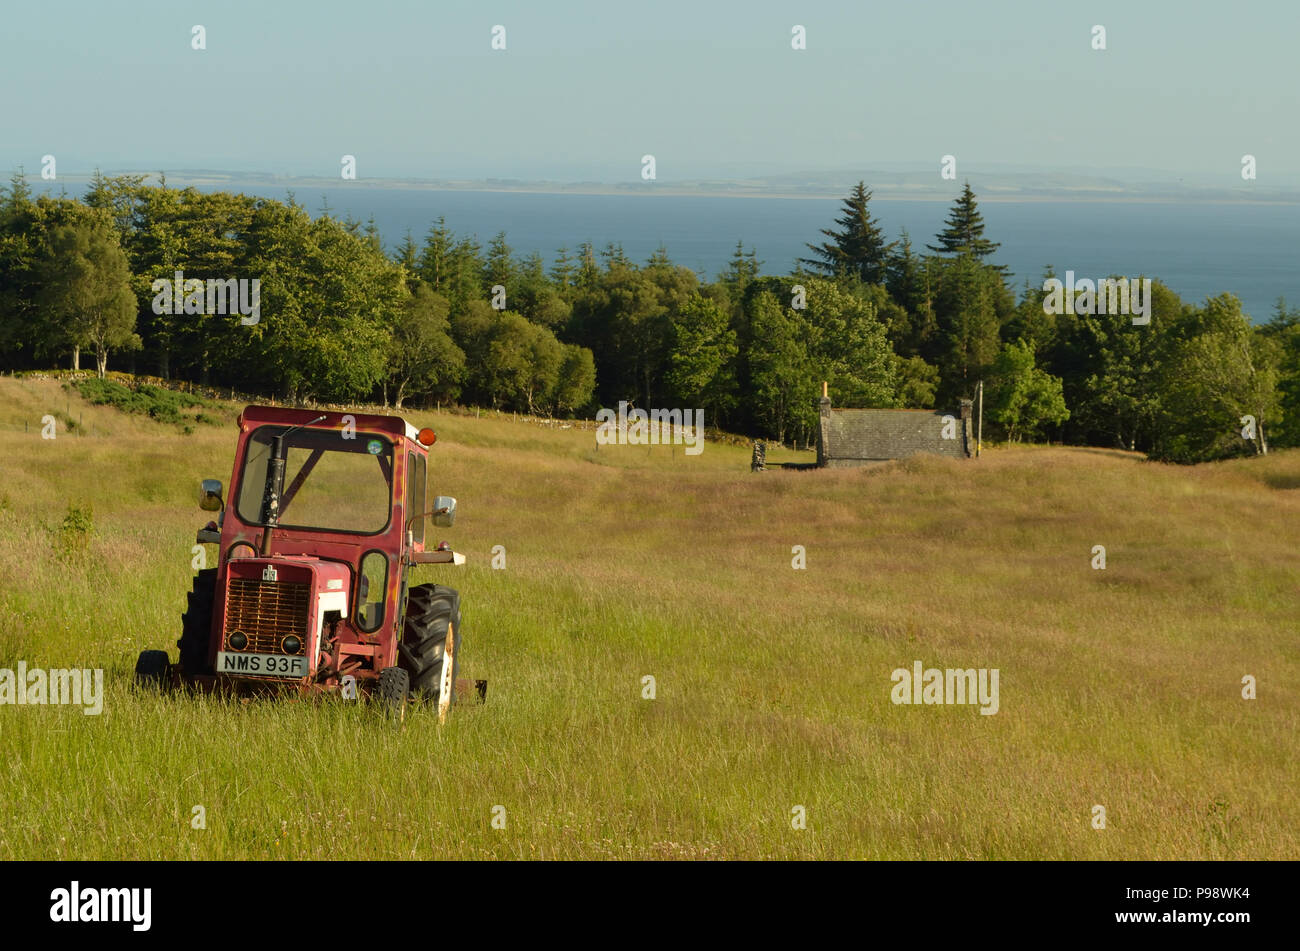 Un tracteur abandonné dans un champ à Backies, près de Golspie village dans les Highlands écossais Banque D'Images